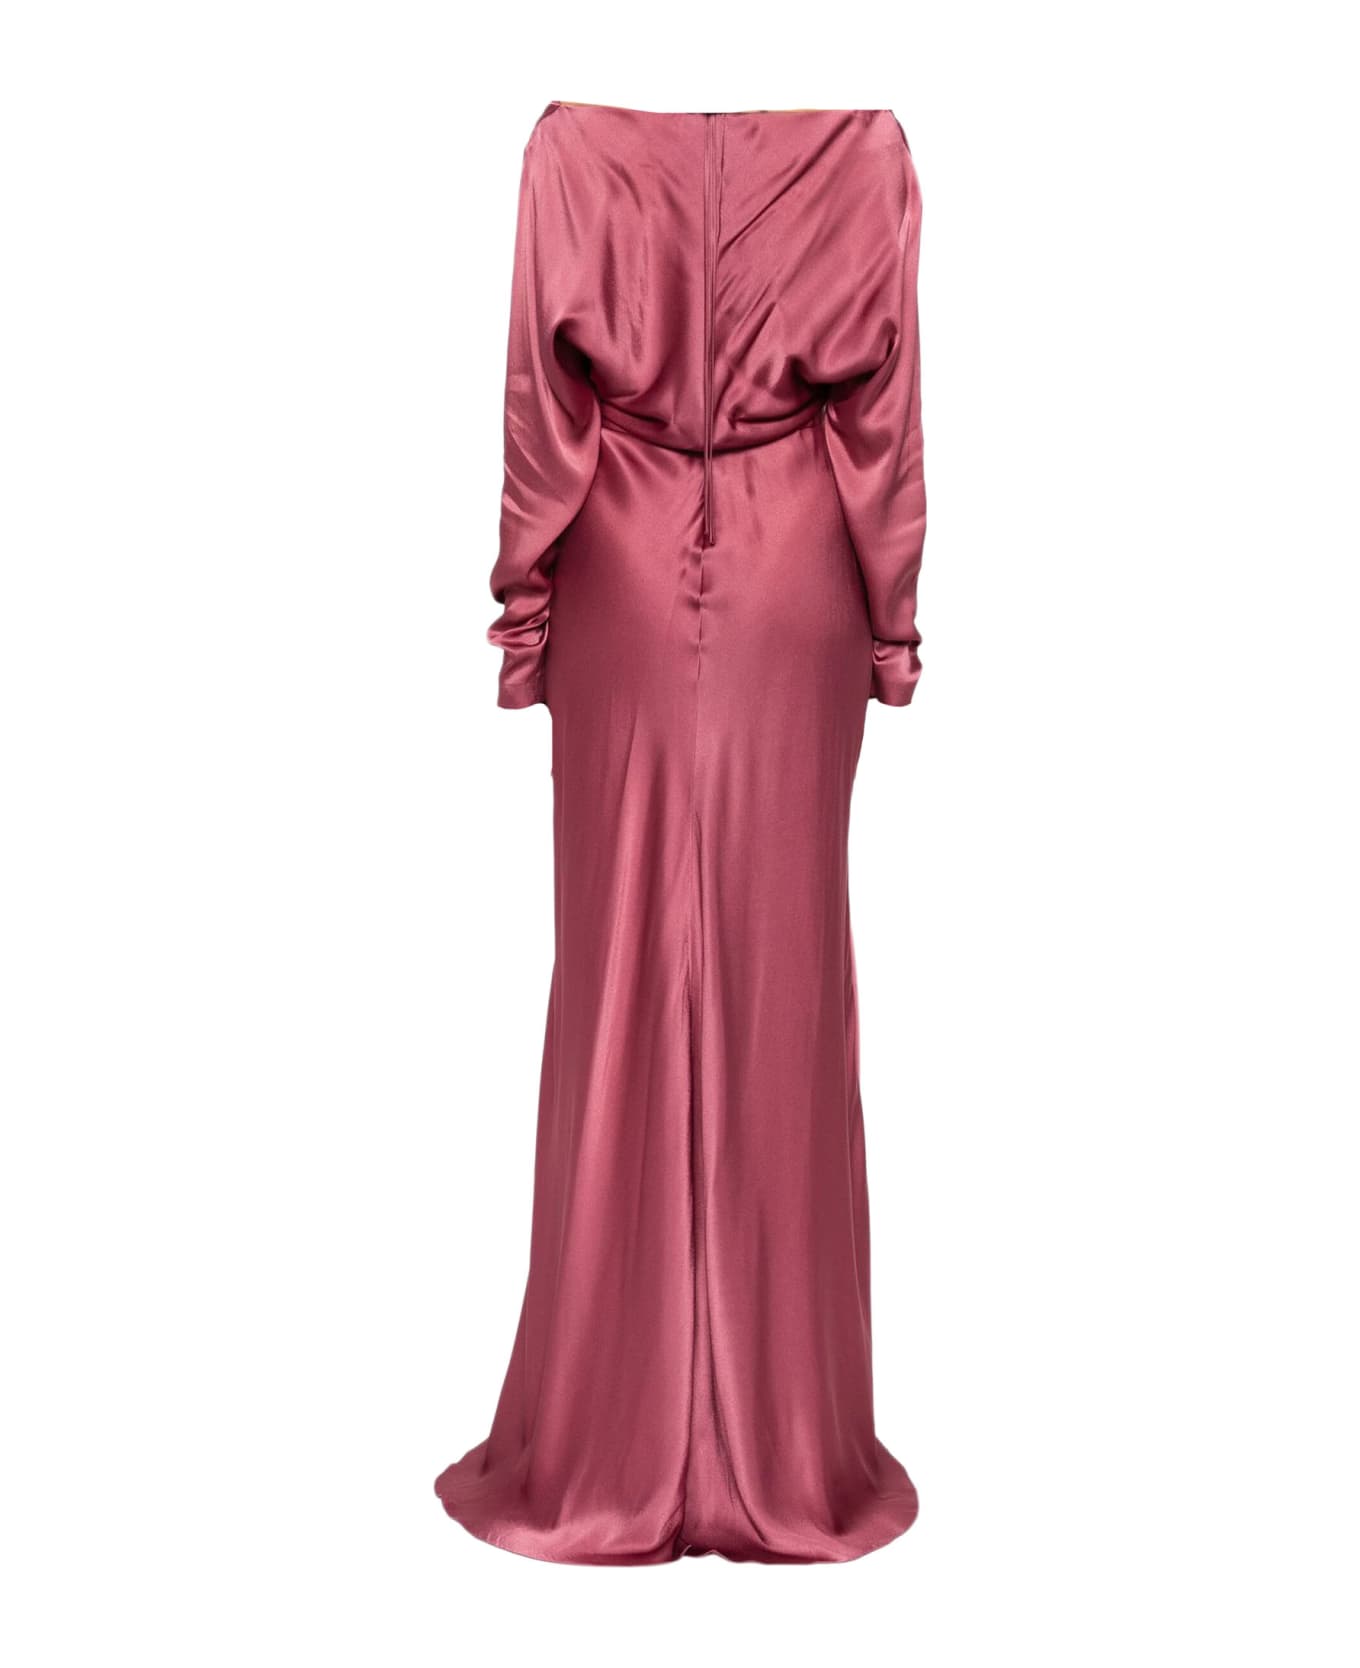 Alberta Ferretti Aubergine Satin Finish Dress - Pink